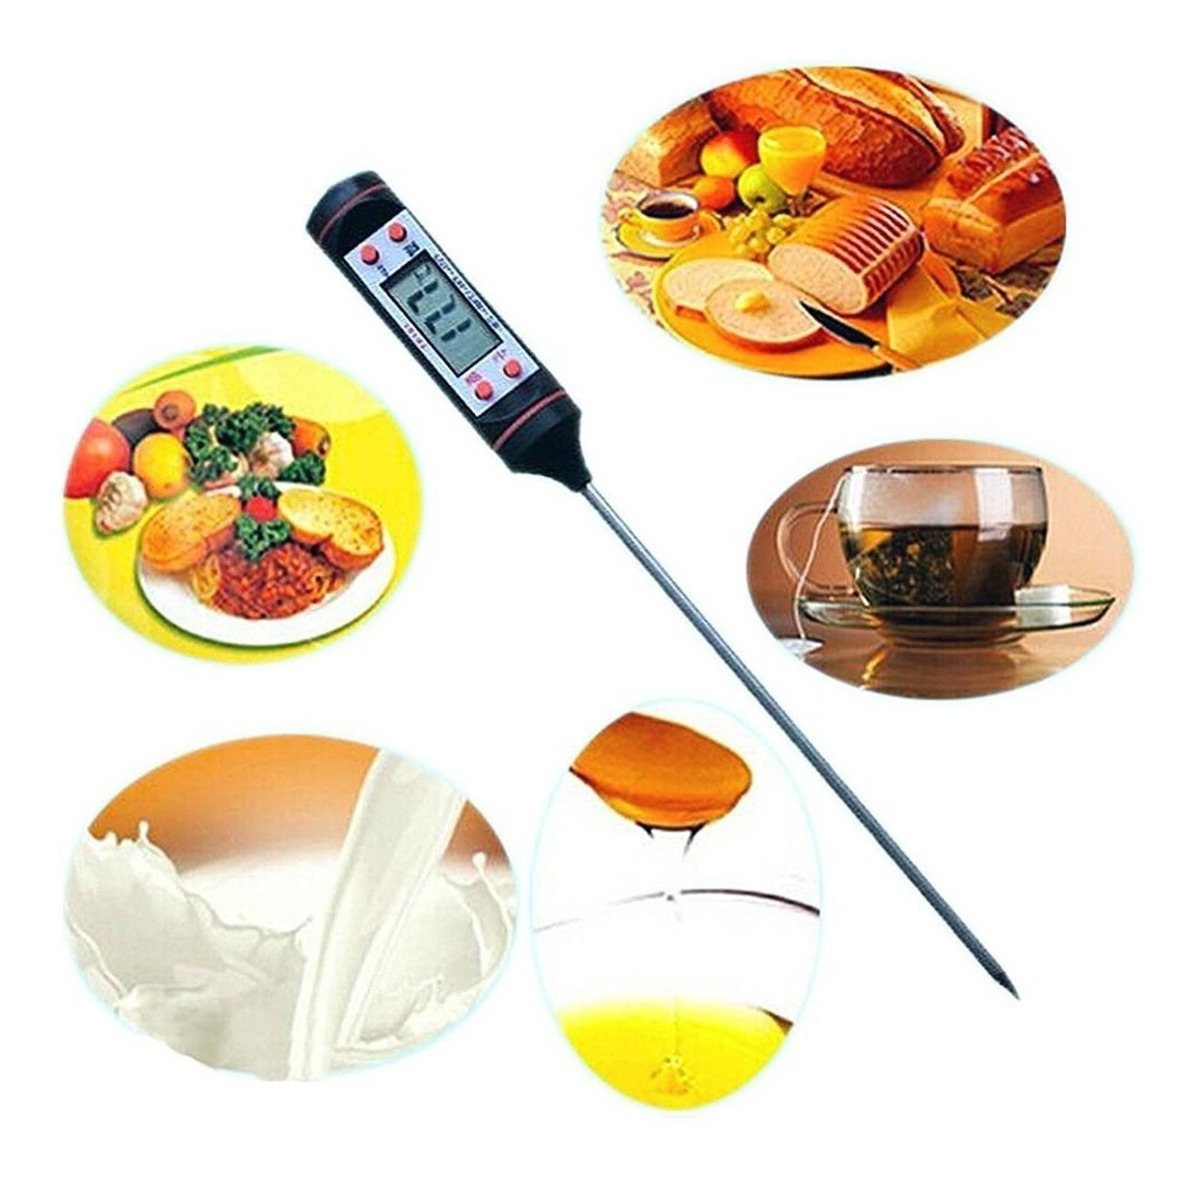 Termómetro Para Medir La Temperatura De Alimentos Cocina 1.55 oz